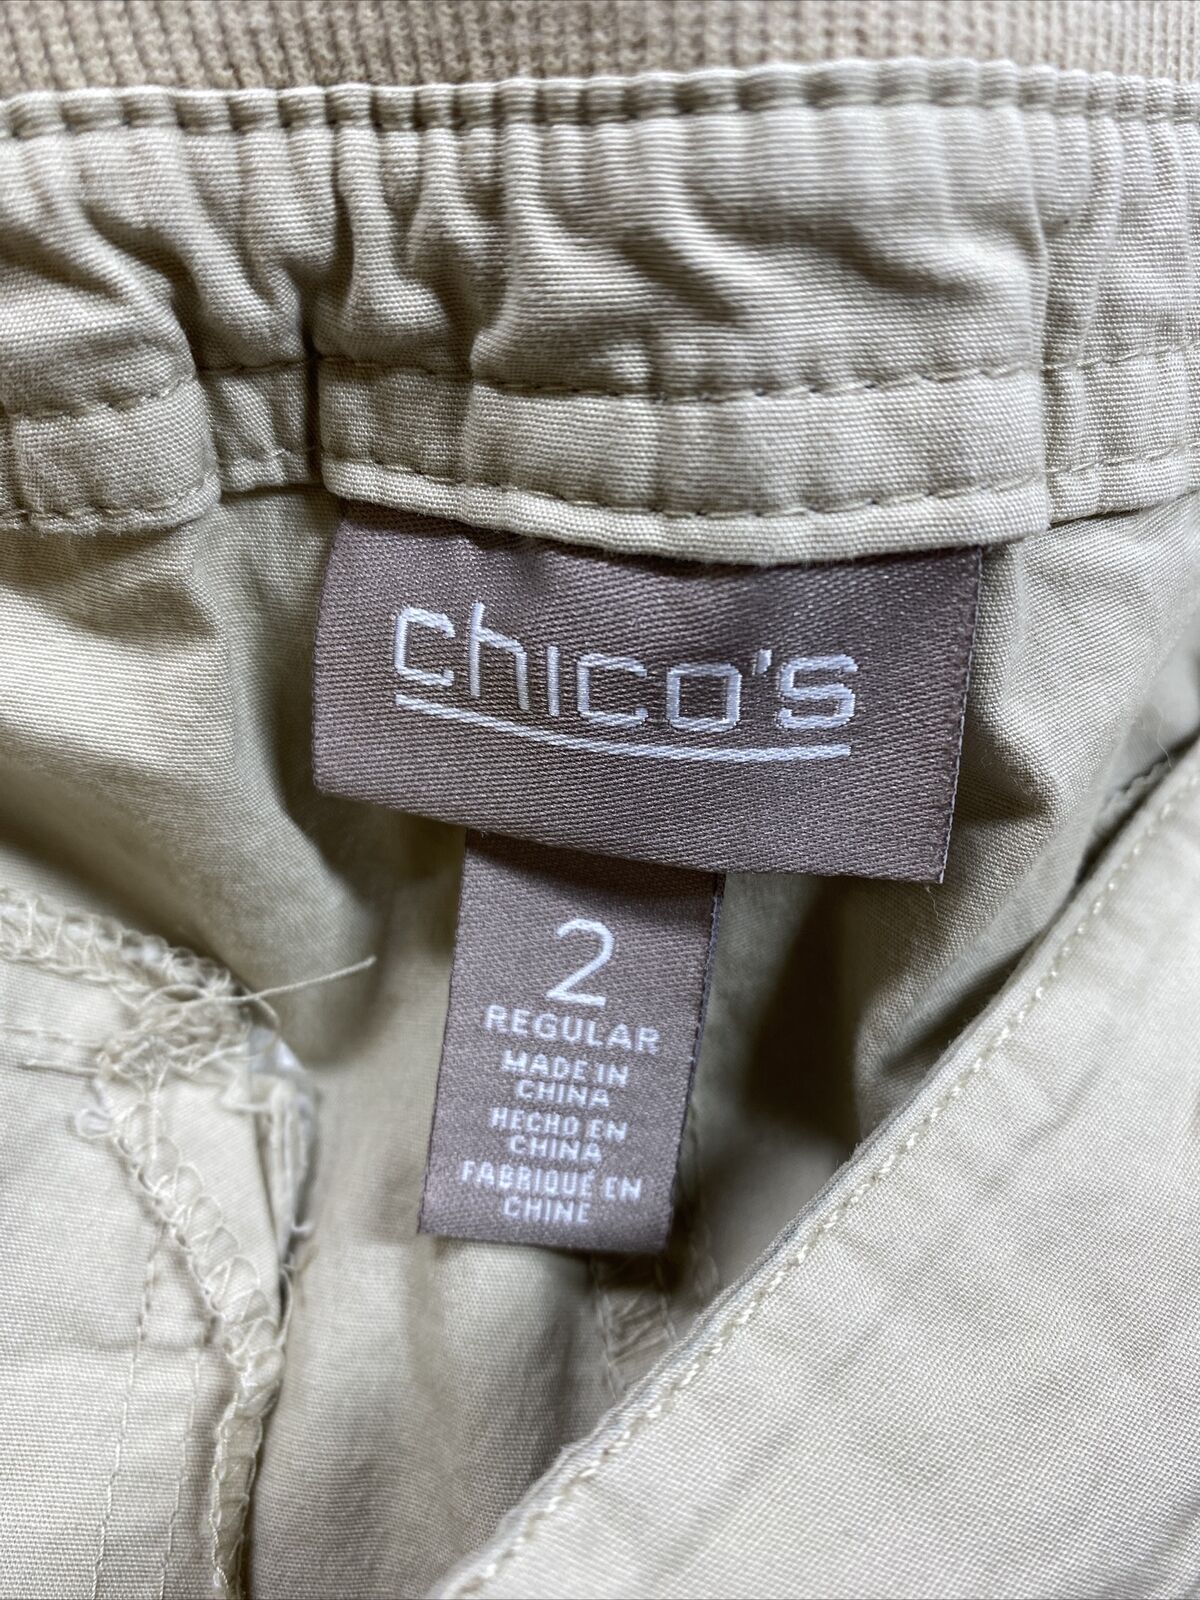 Chico's Pantalones cargo casuales de algodón cónicos beige para mujer - 2/US 12